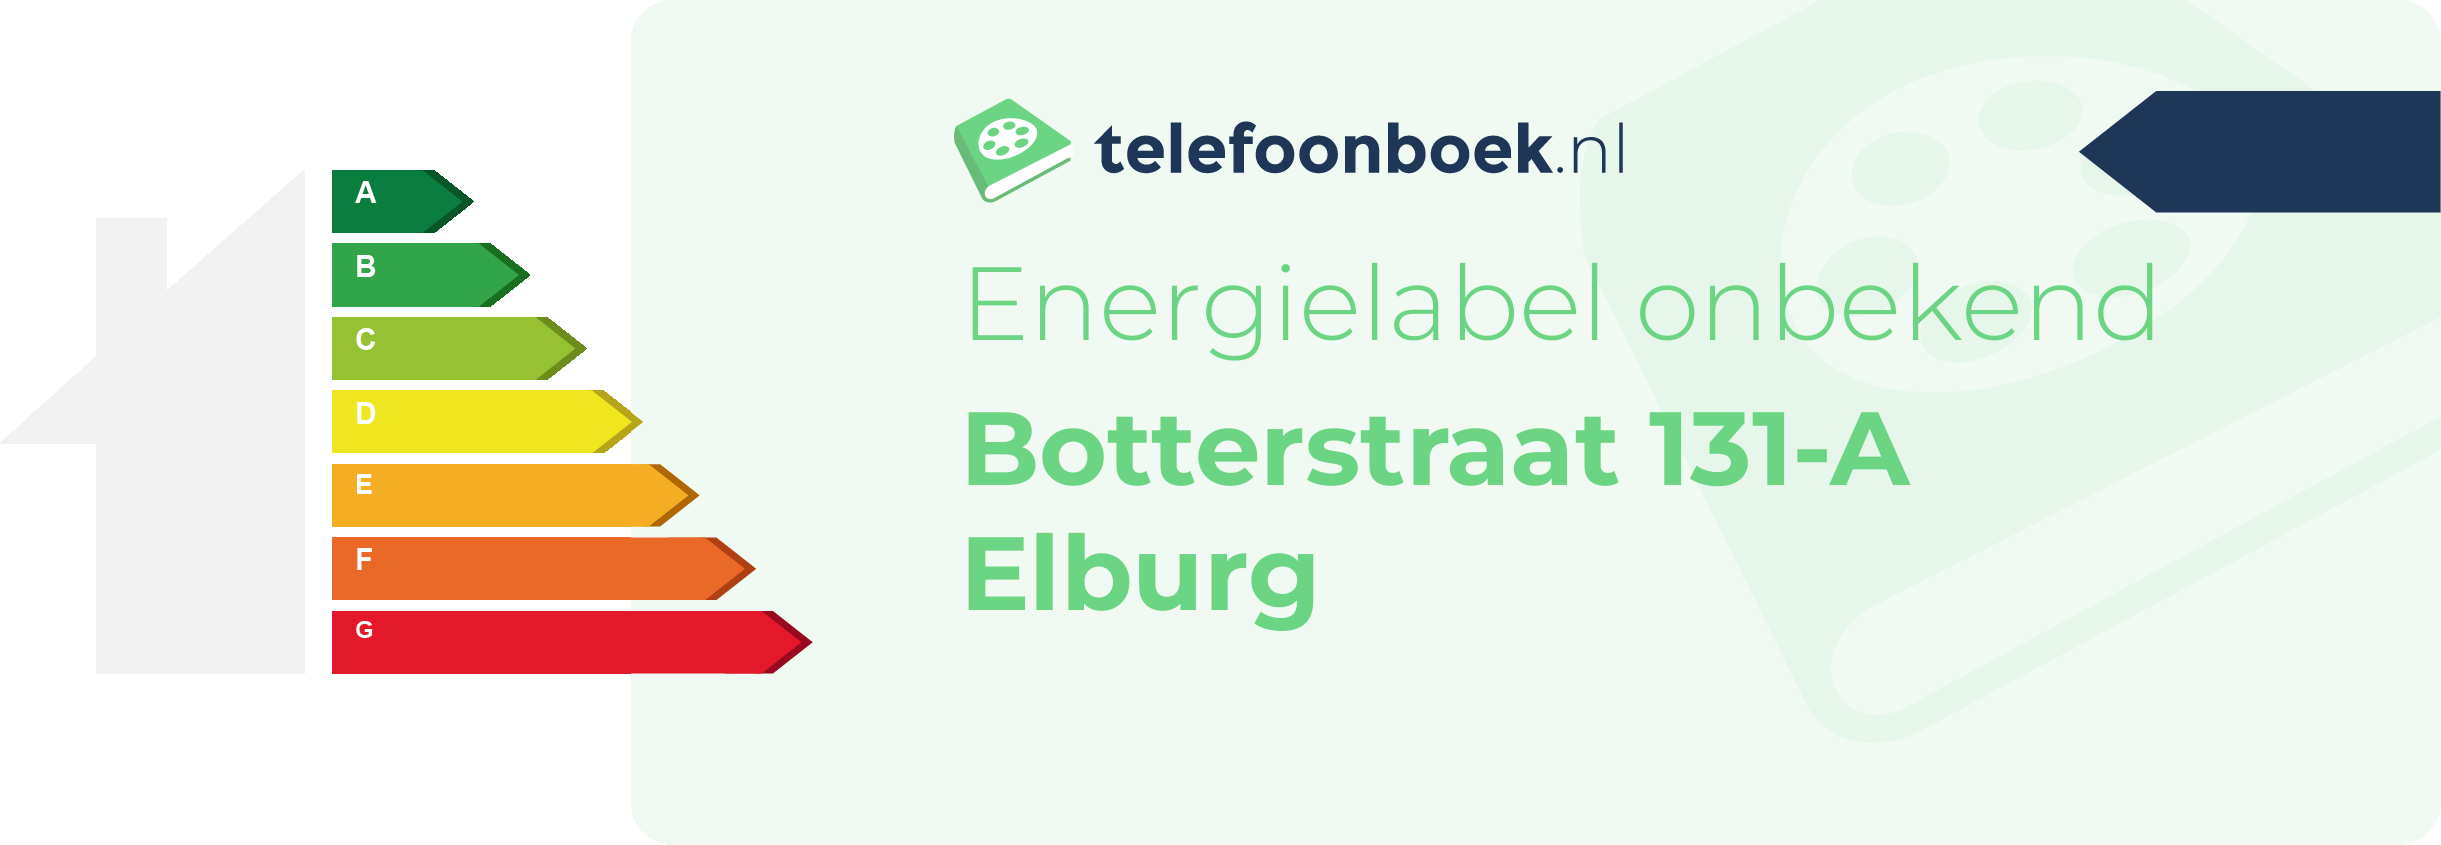 Energielabel Botterstraat 131-A Elburg